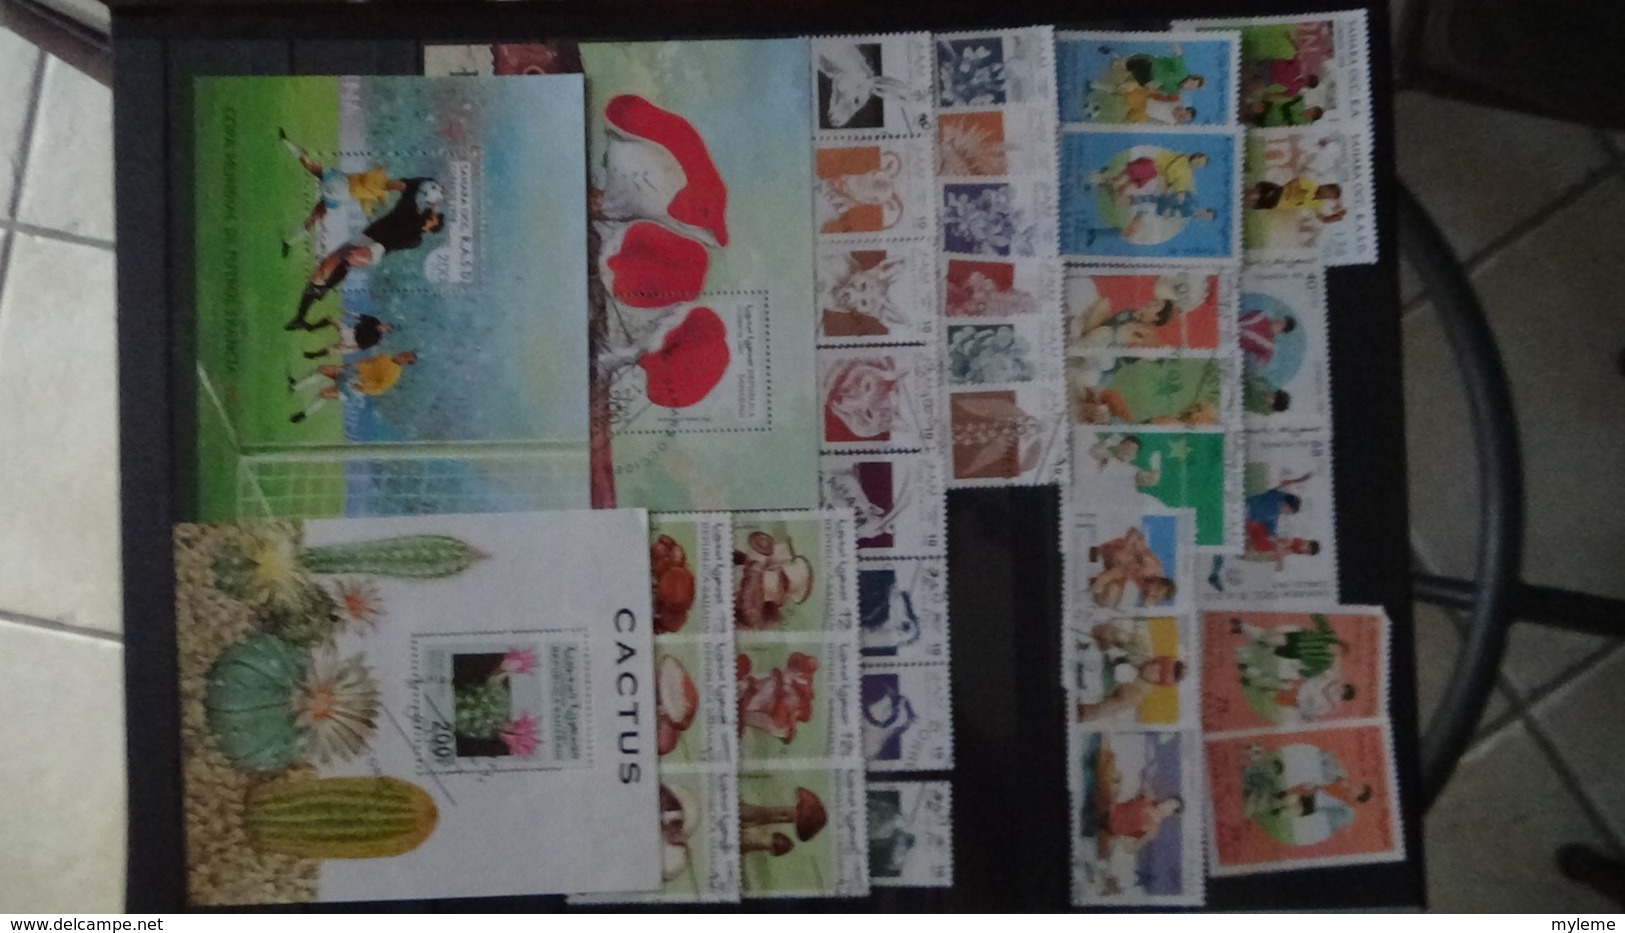 Collection du Sahara Occidental en timbres et blocs. Pas commun et très sympa !!!